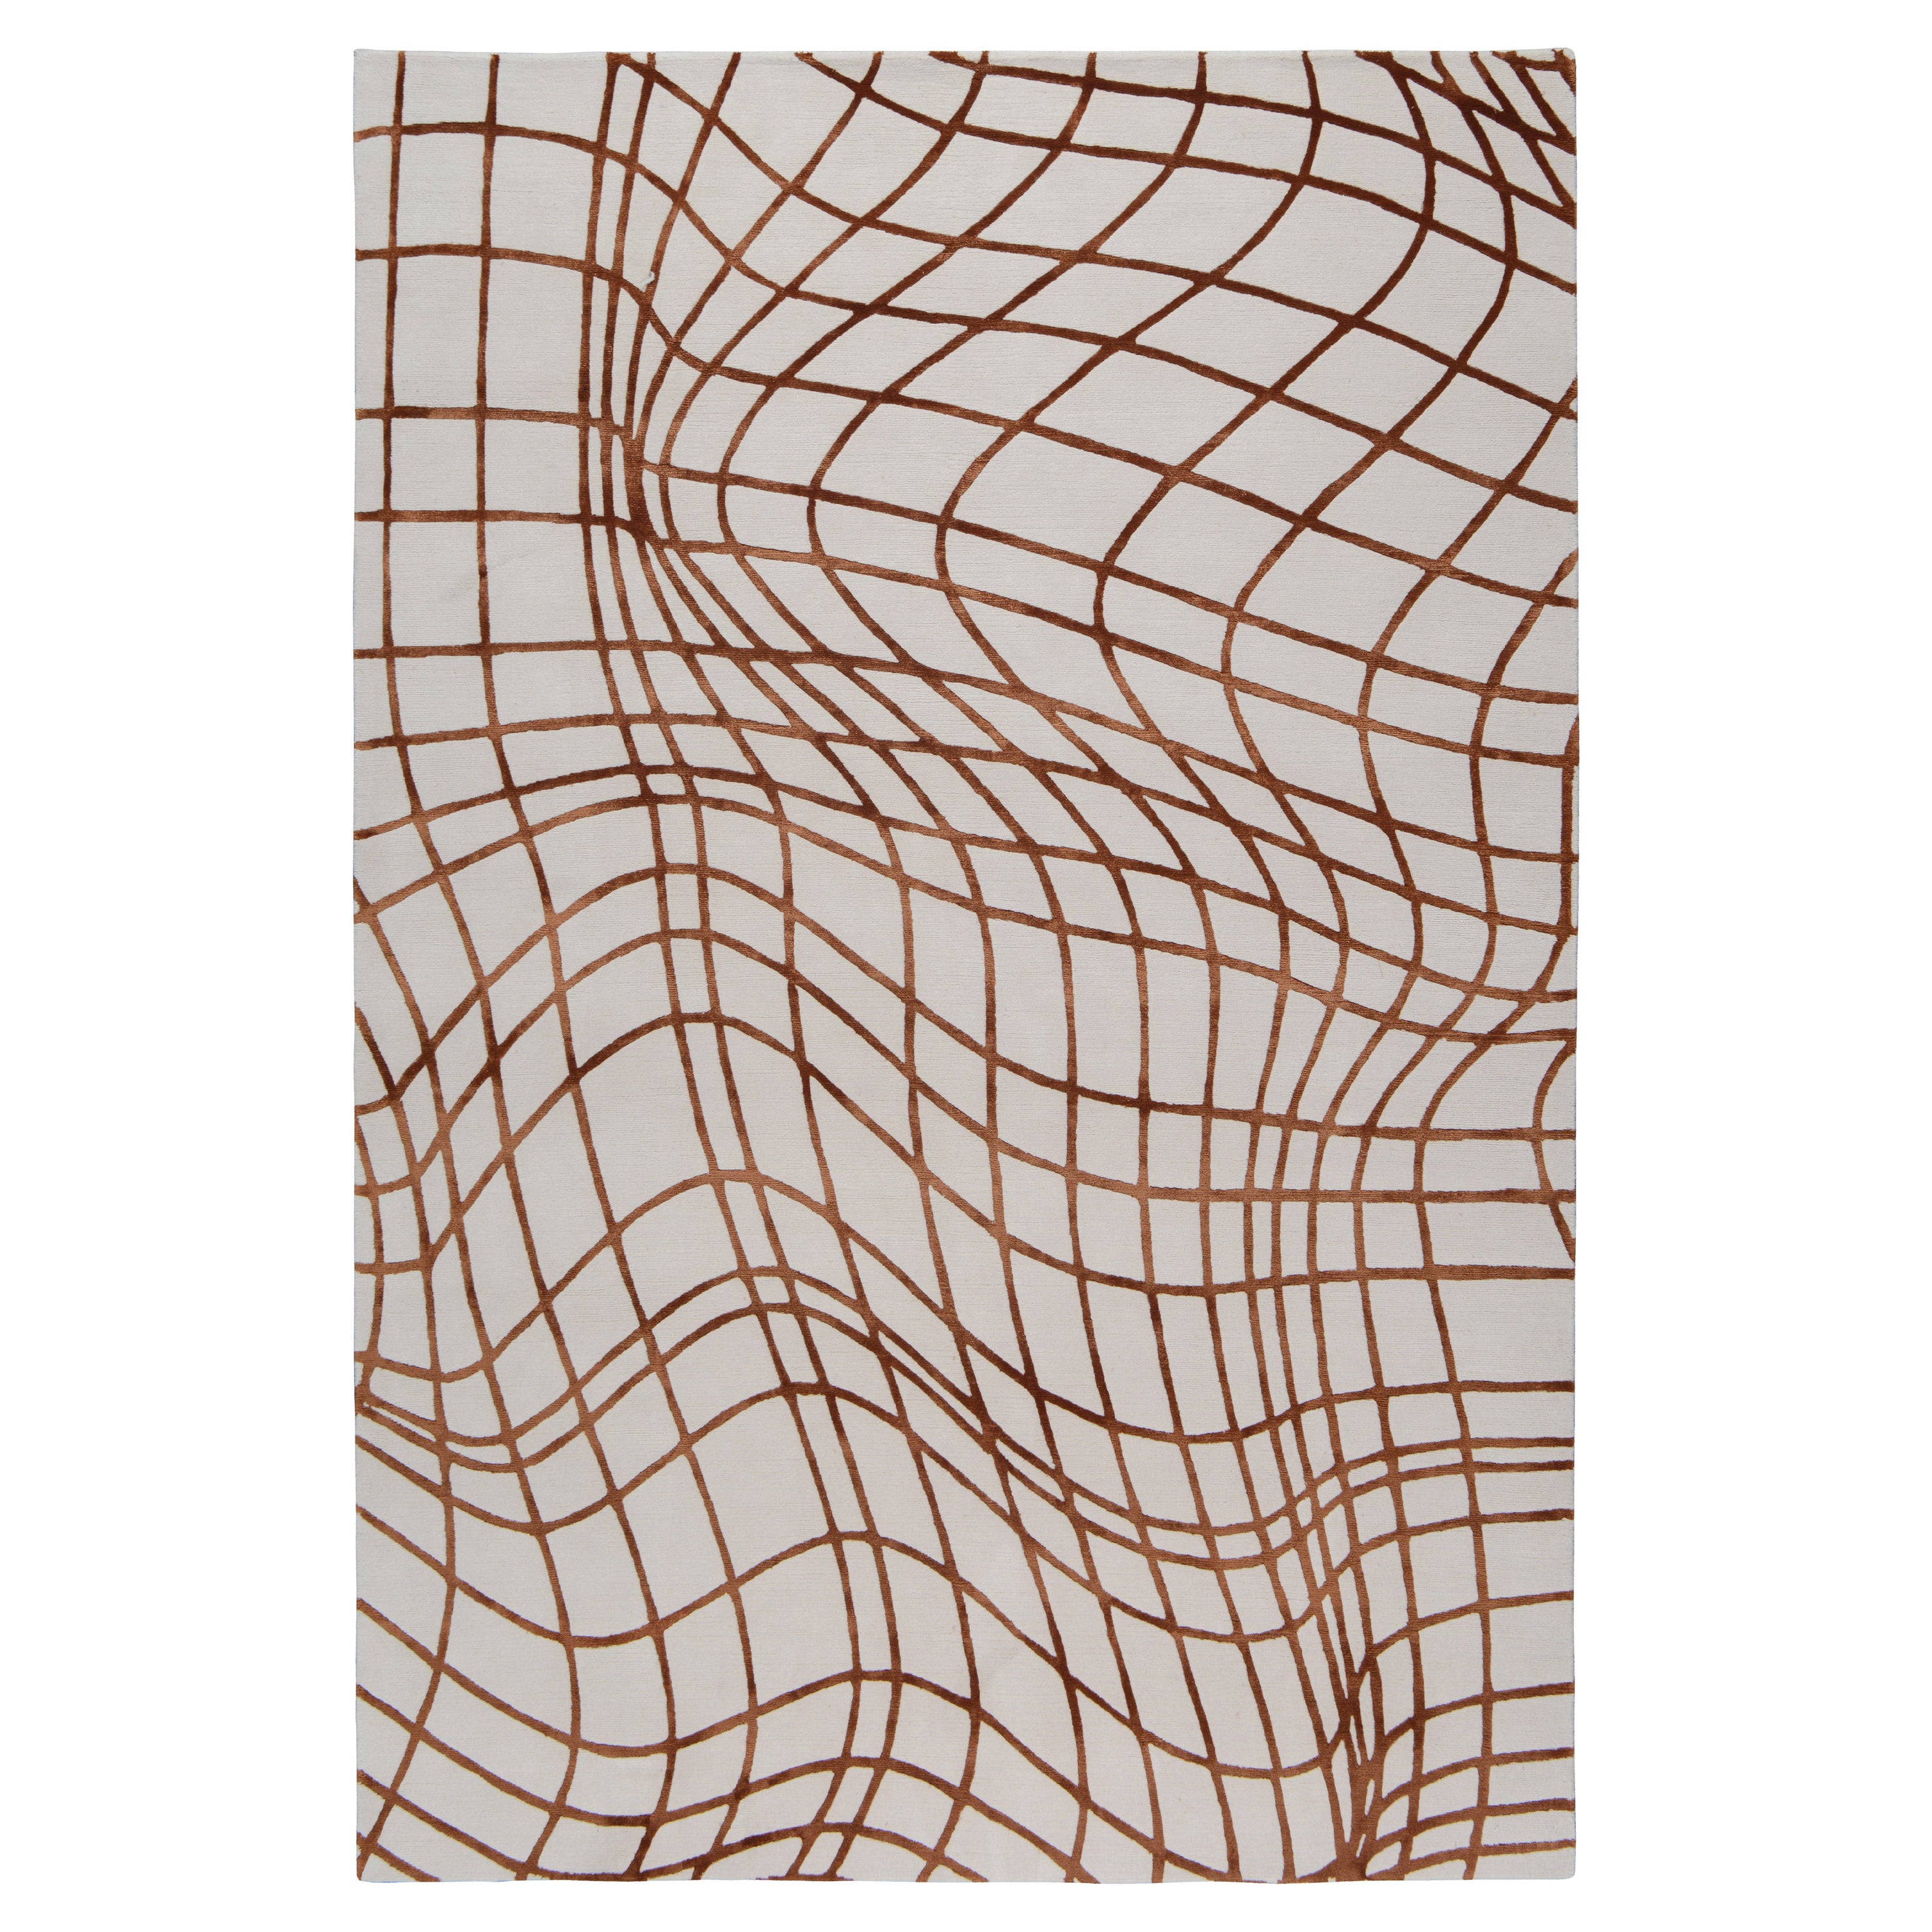 Wavelength présente un motif de grille déformée inspiré d'un graphique en 3D. Le tapis transforme les lignes abstraites en un motif audacieux, parfait pour ajouter de l'intrigue à un espace. Tissé par nos artisans experts au Népal en utilisant la